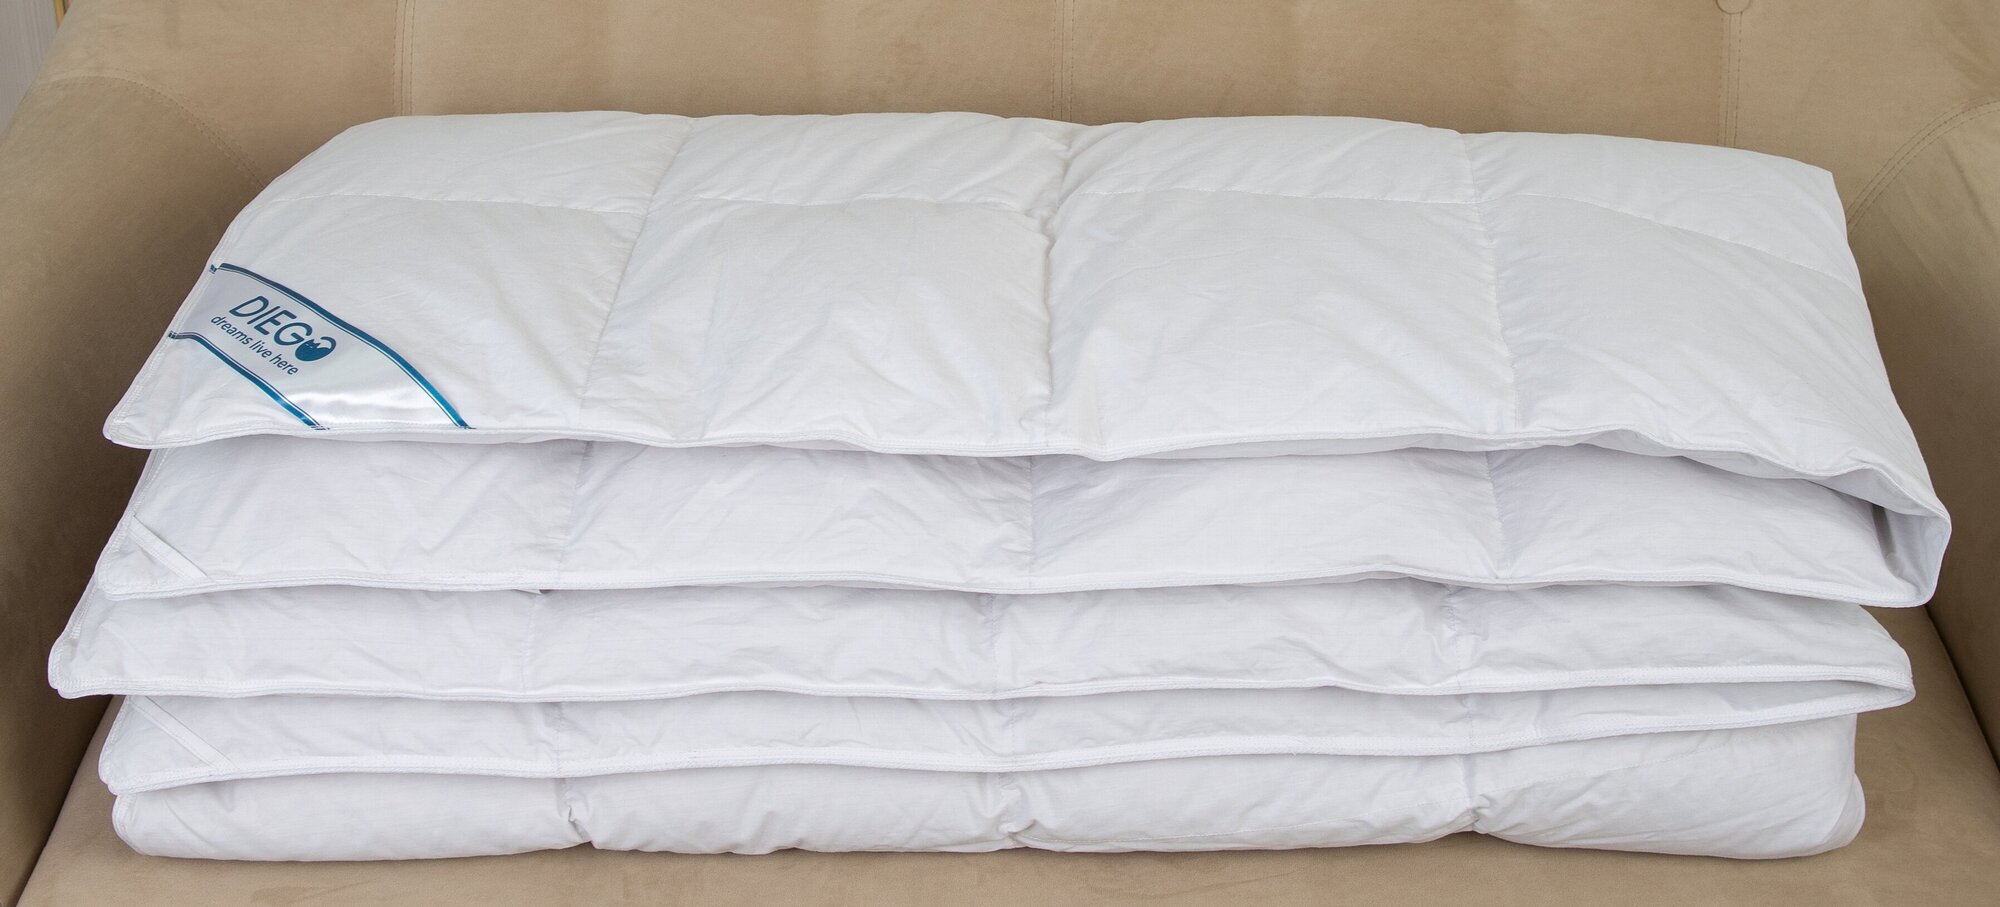 Одеяло пуховое Диана размер евро 2 спальное 200х200 см всесезонное, мягкое, пух гусь, теплое, легкое, для взрослого, текстиль для дома для уюта - фотография № 3